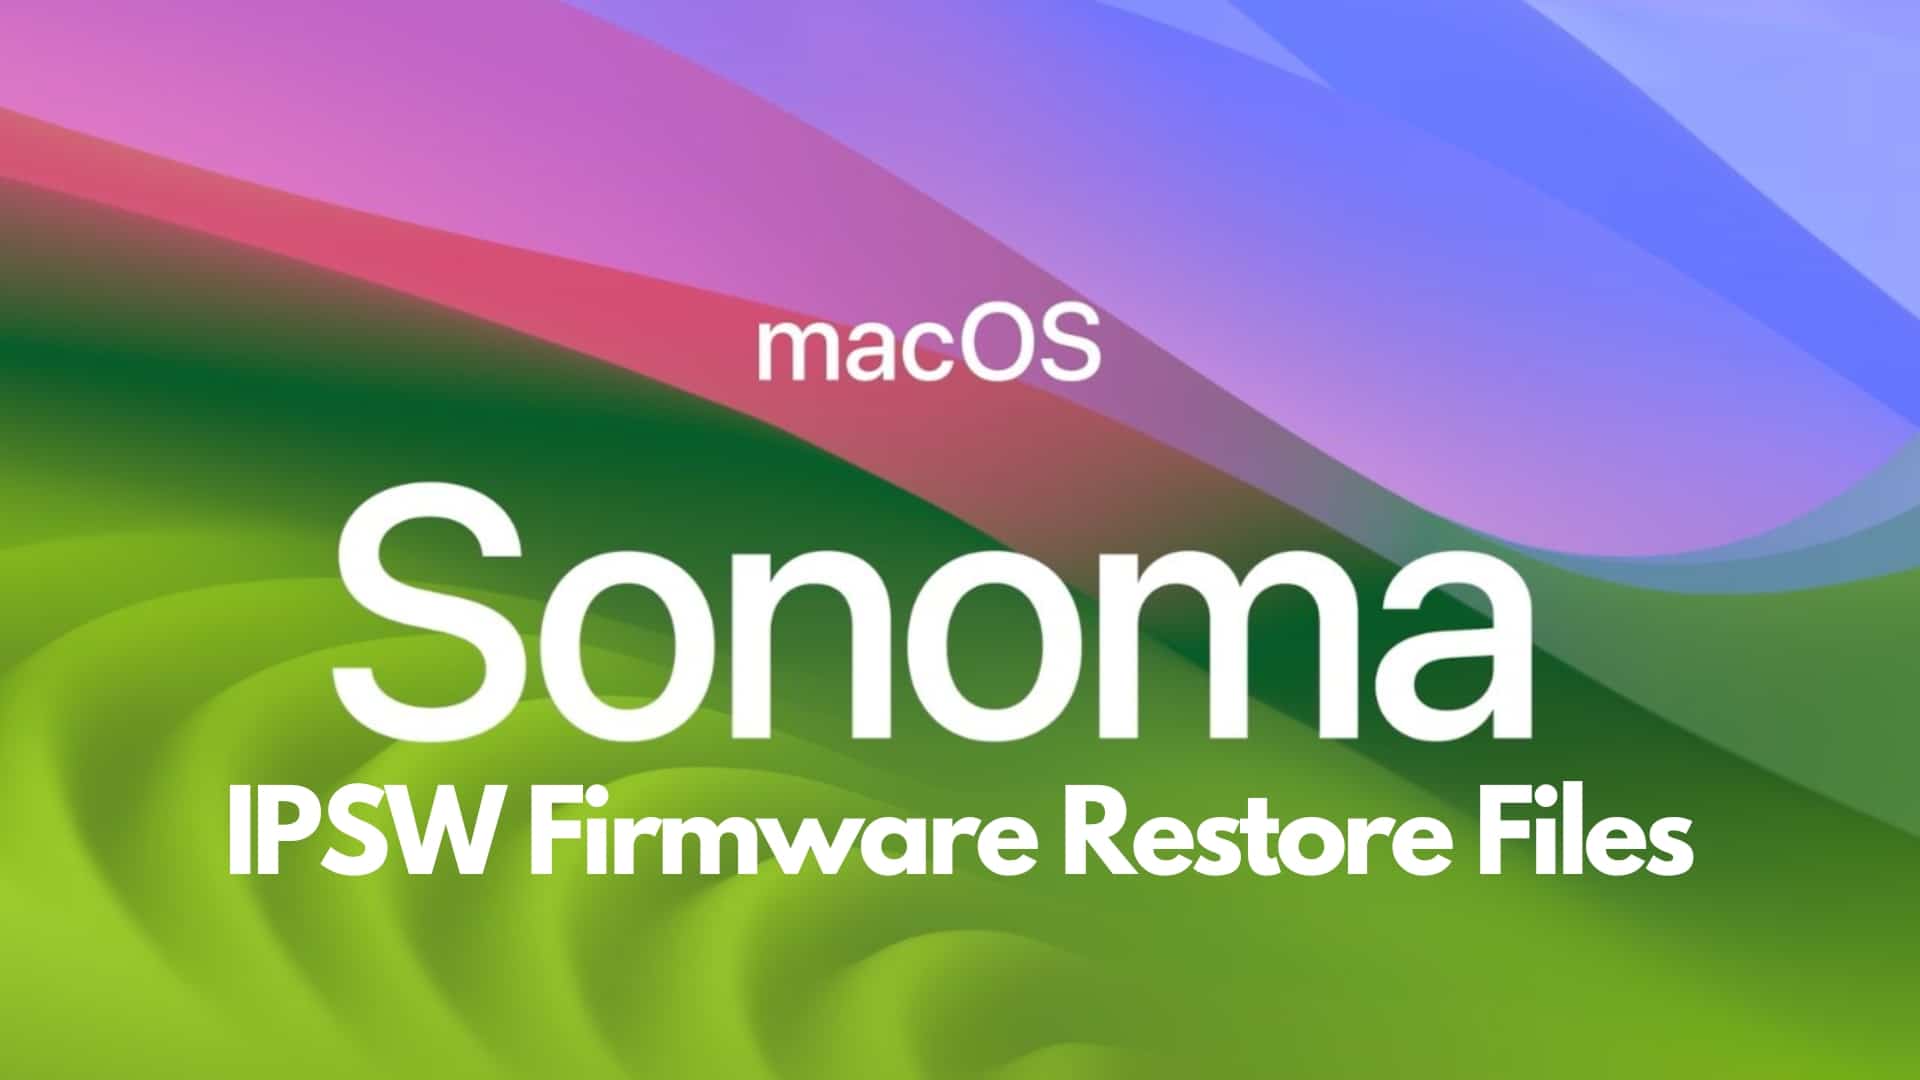 Download macOS Sonoma IPSW Firmware Restore Files